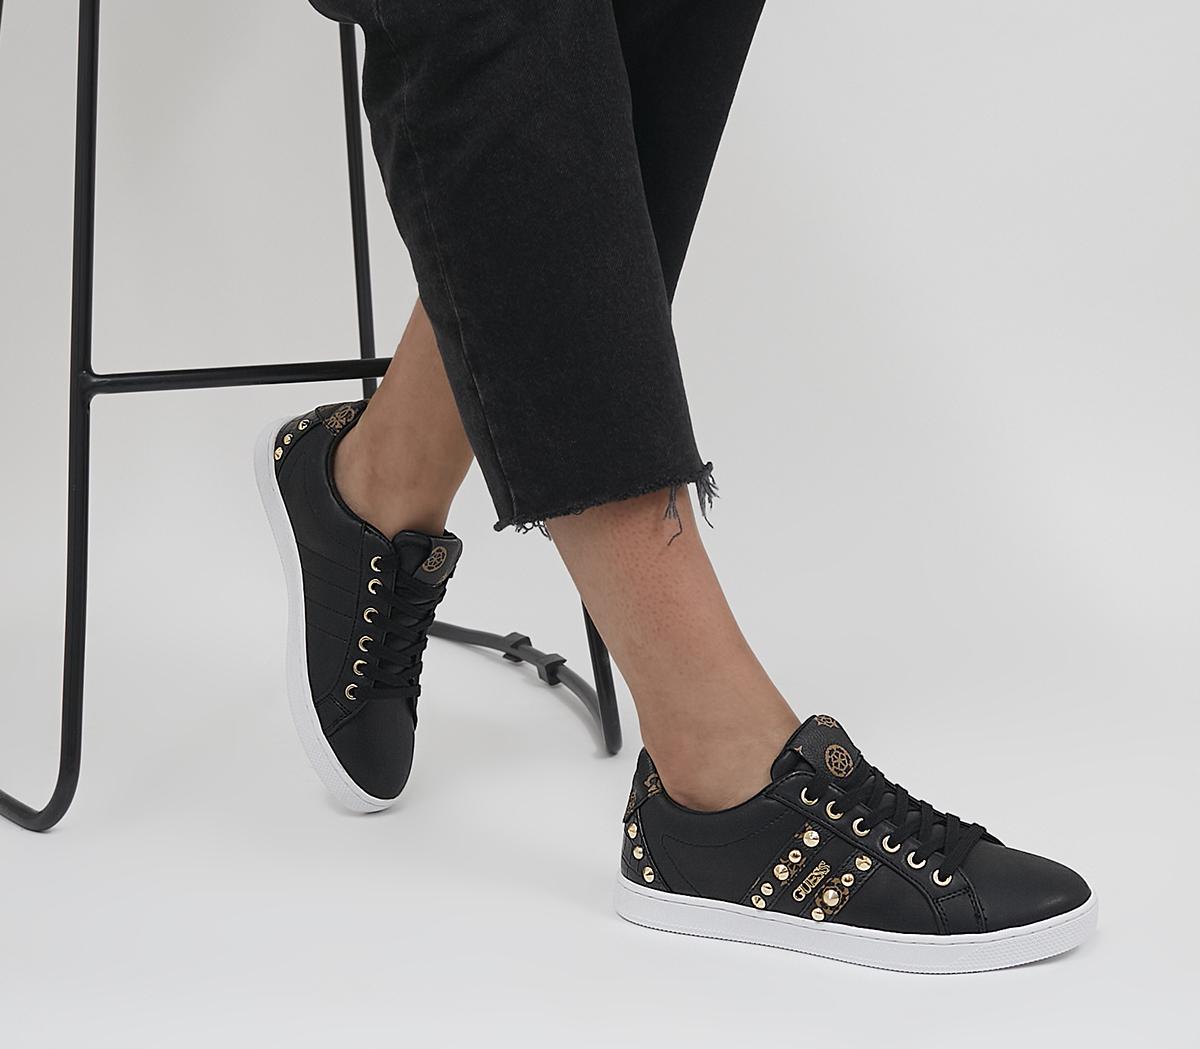 mesterværk pessimistisk aftale Guess Rassta Studded Trainers Black - Flat Shoes for Women